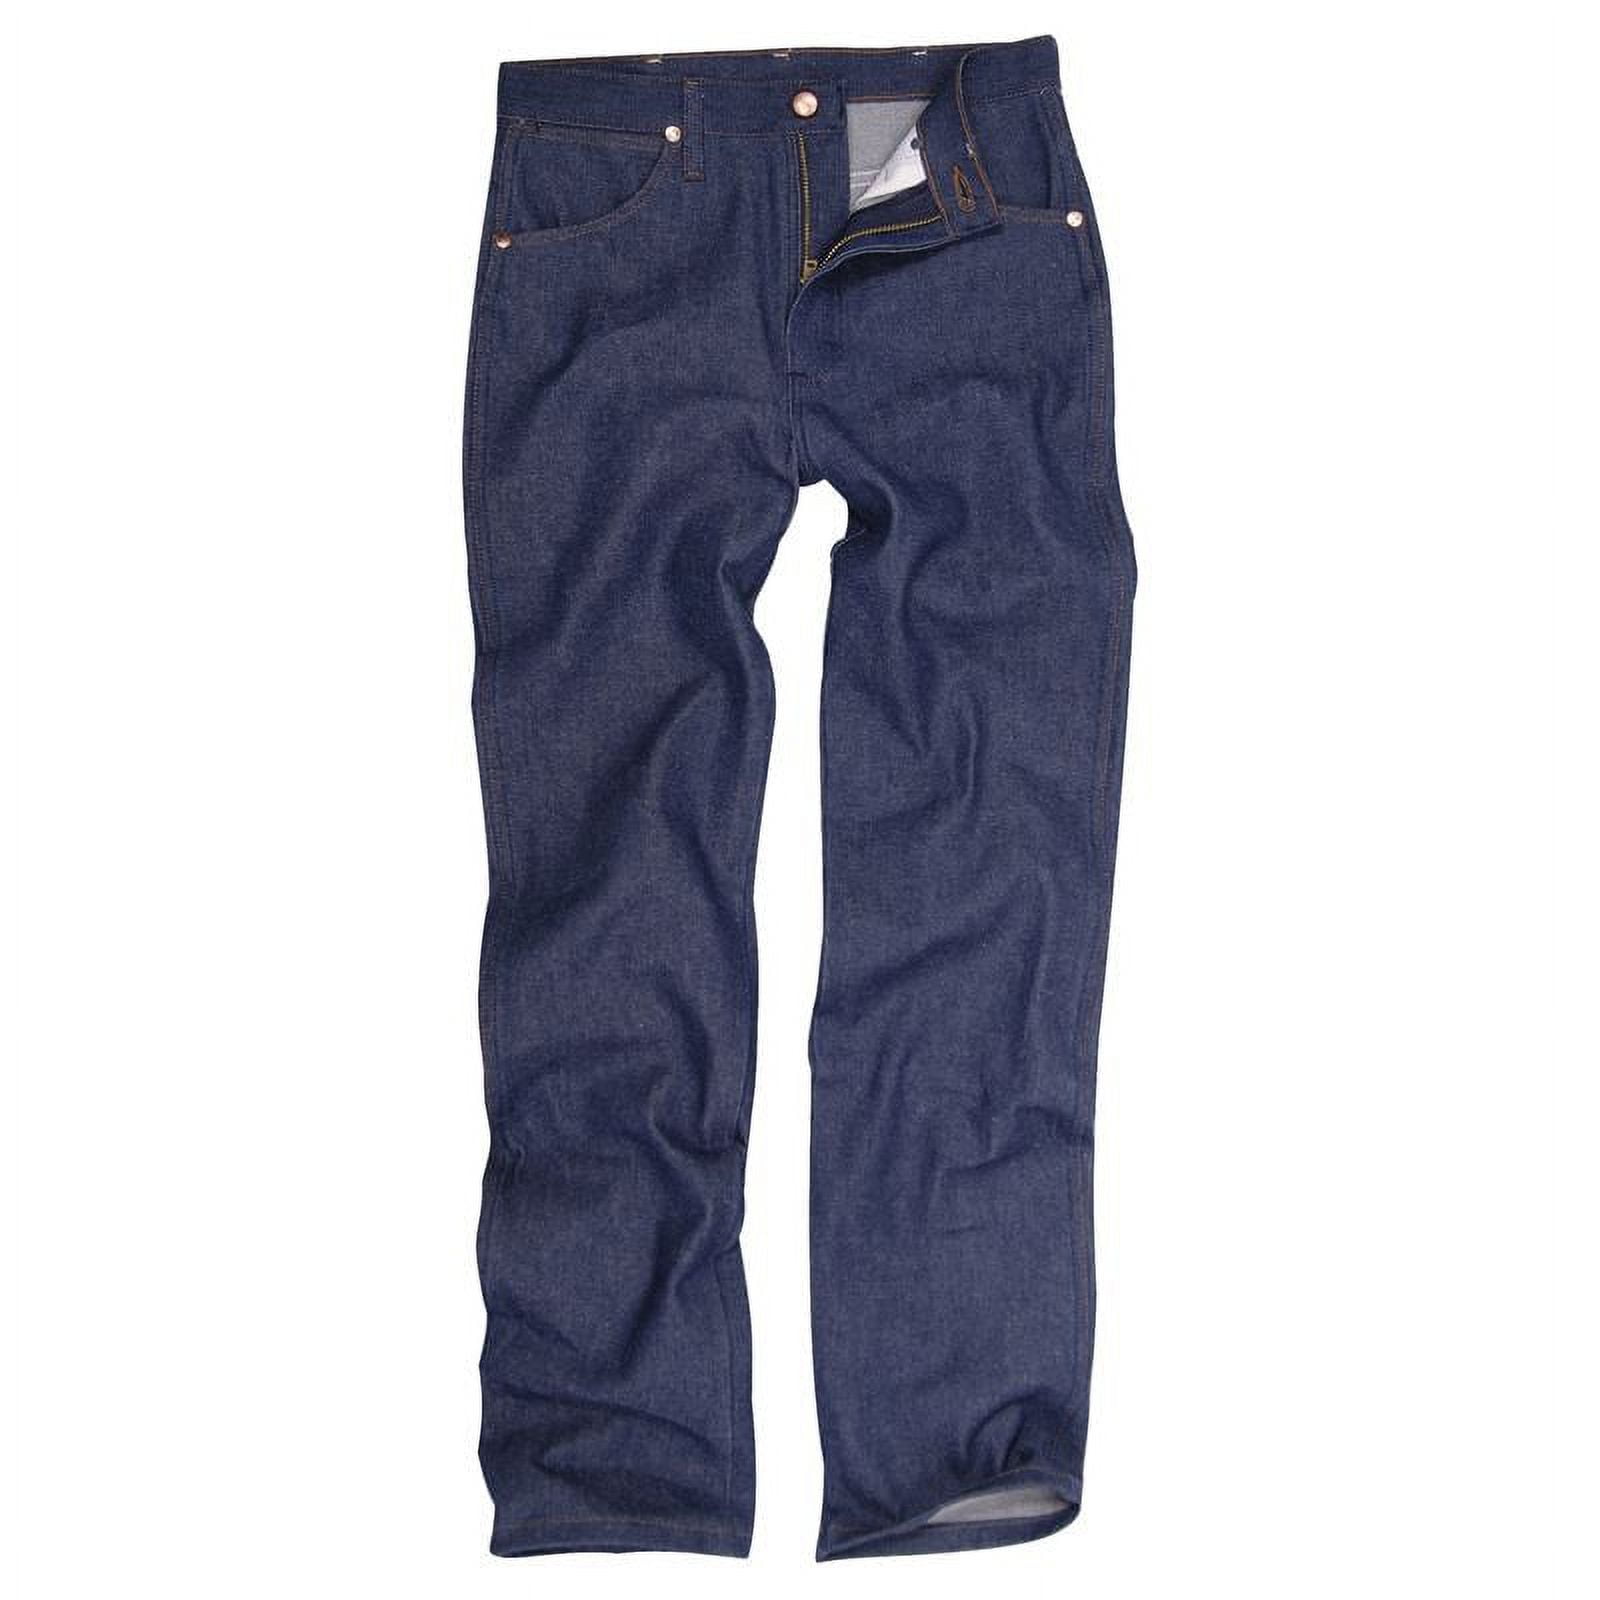 936DEN Wrangler Slim Fit Cowboy Cut Jeans - Walmart.com